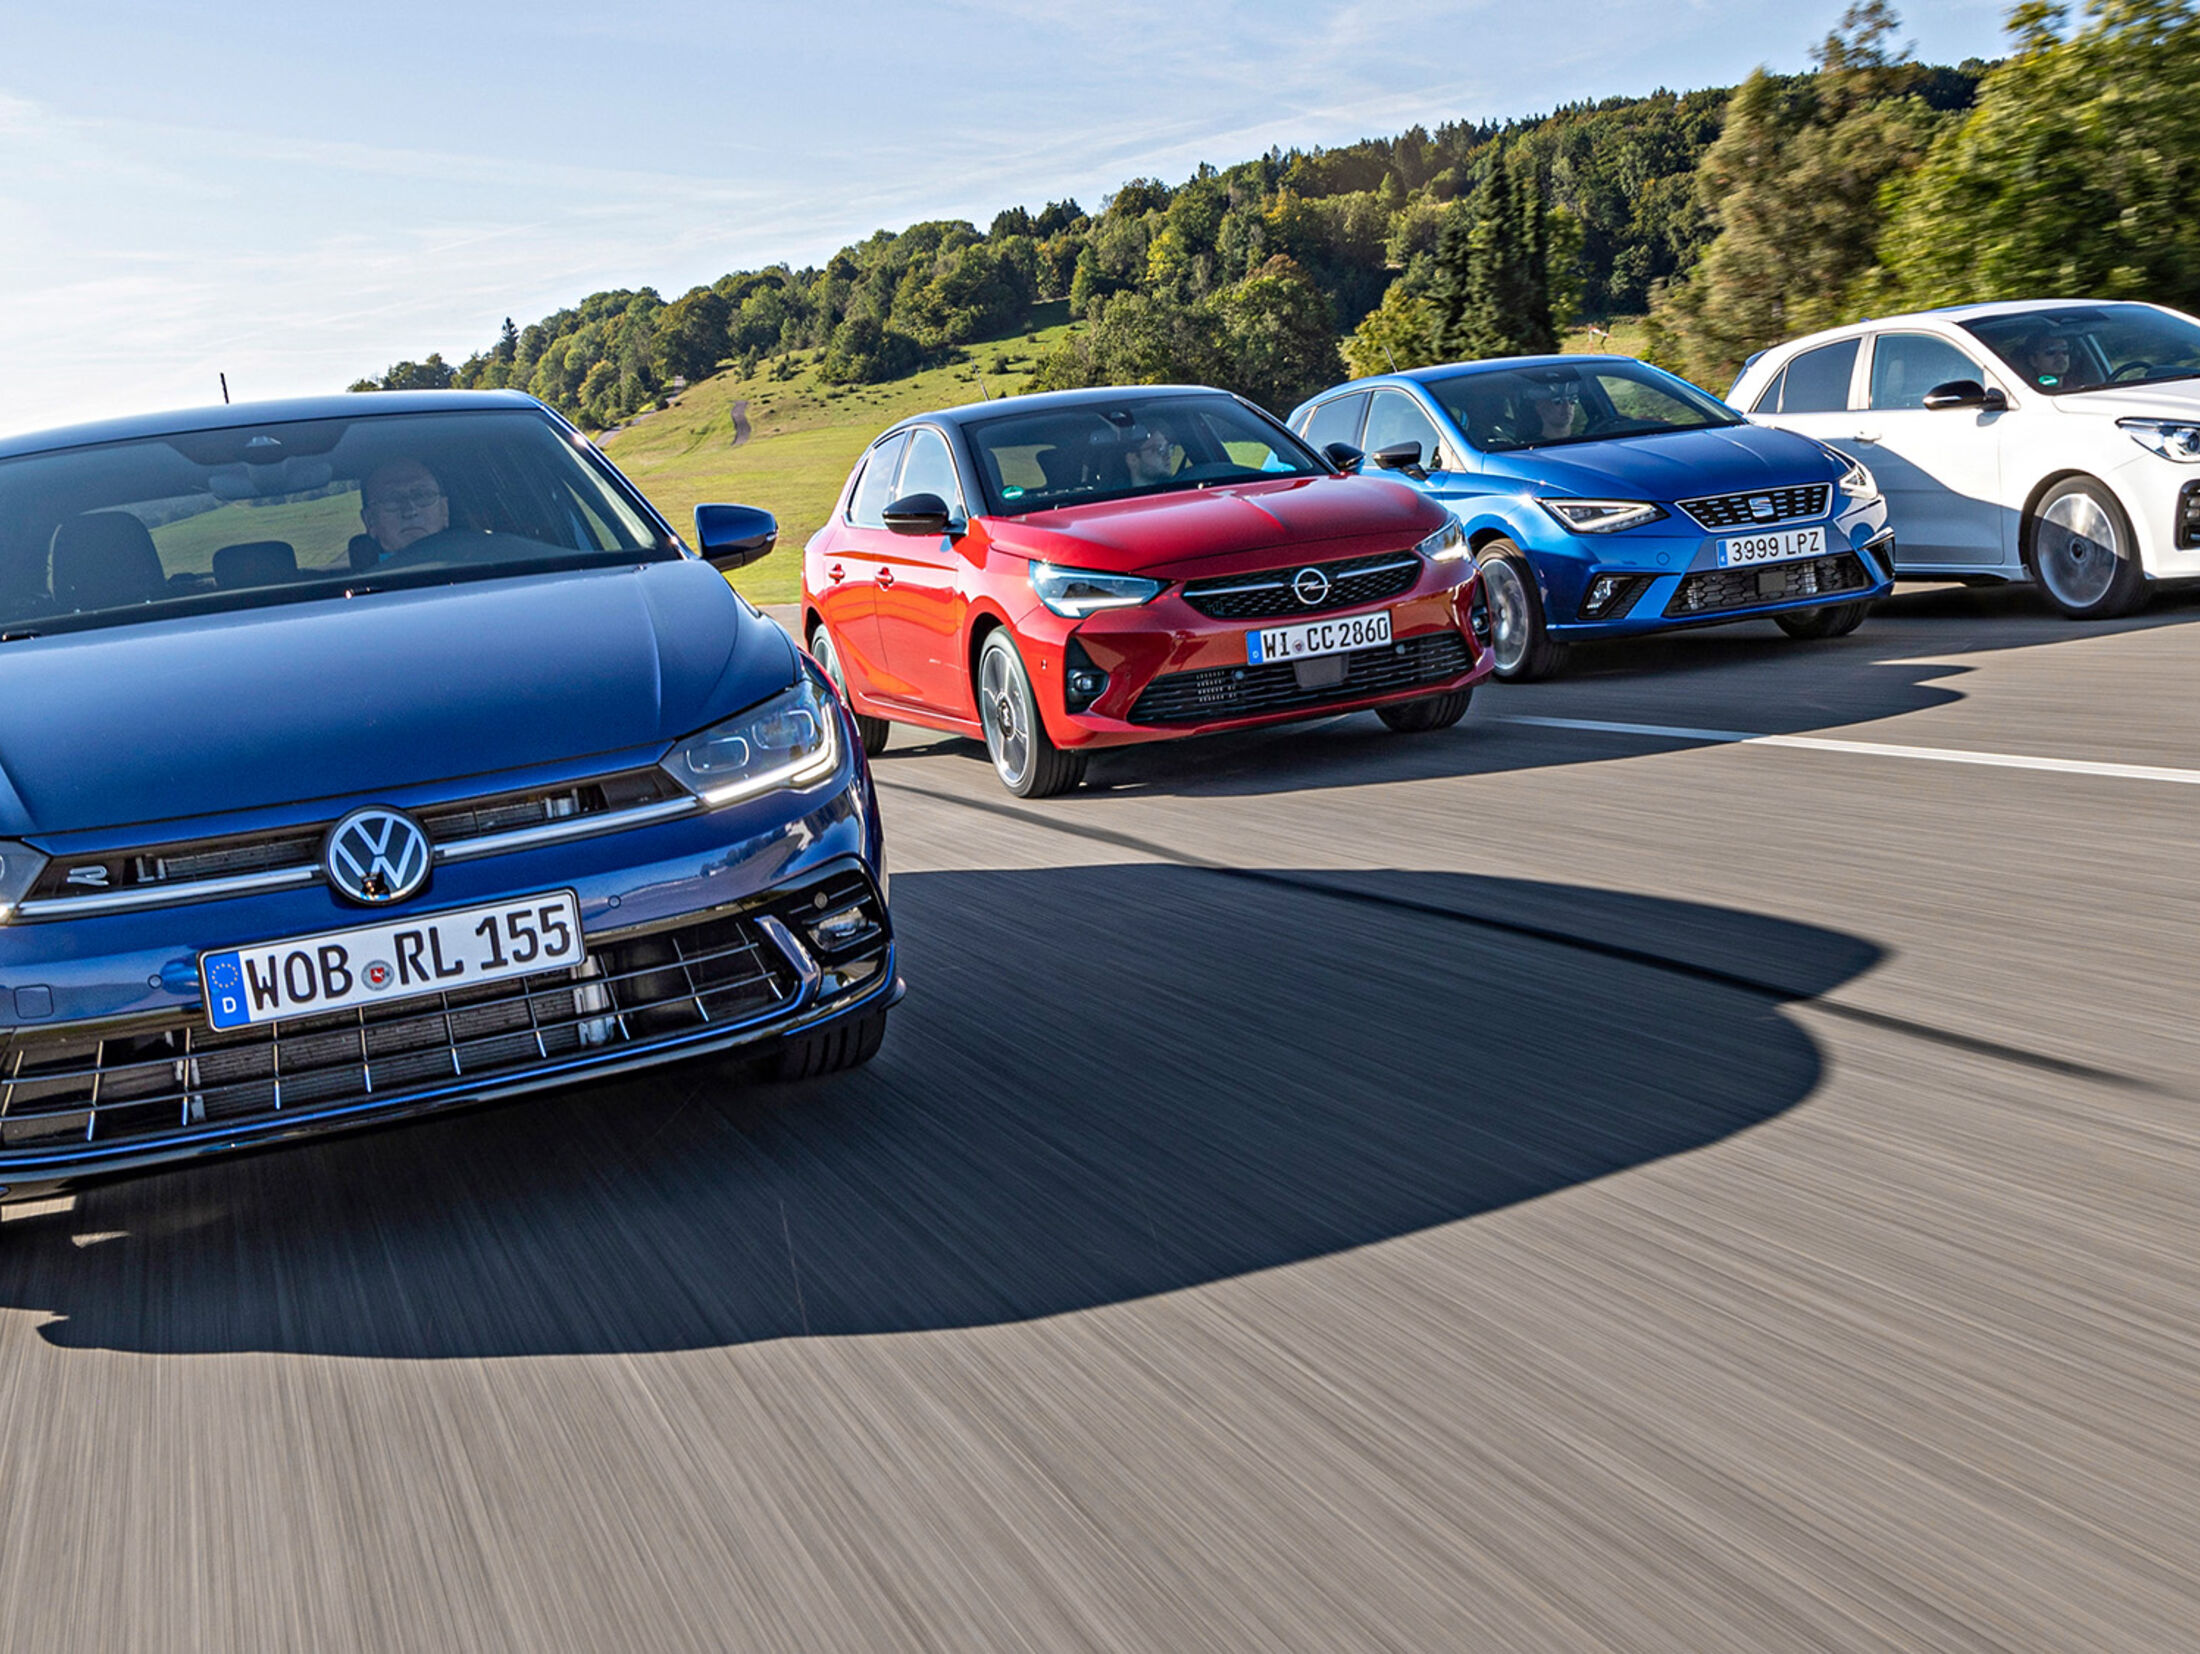 VW Polo gegen Kia Rio, Opel Corsa, Seat Ibiza im Test